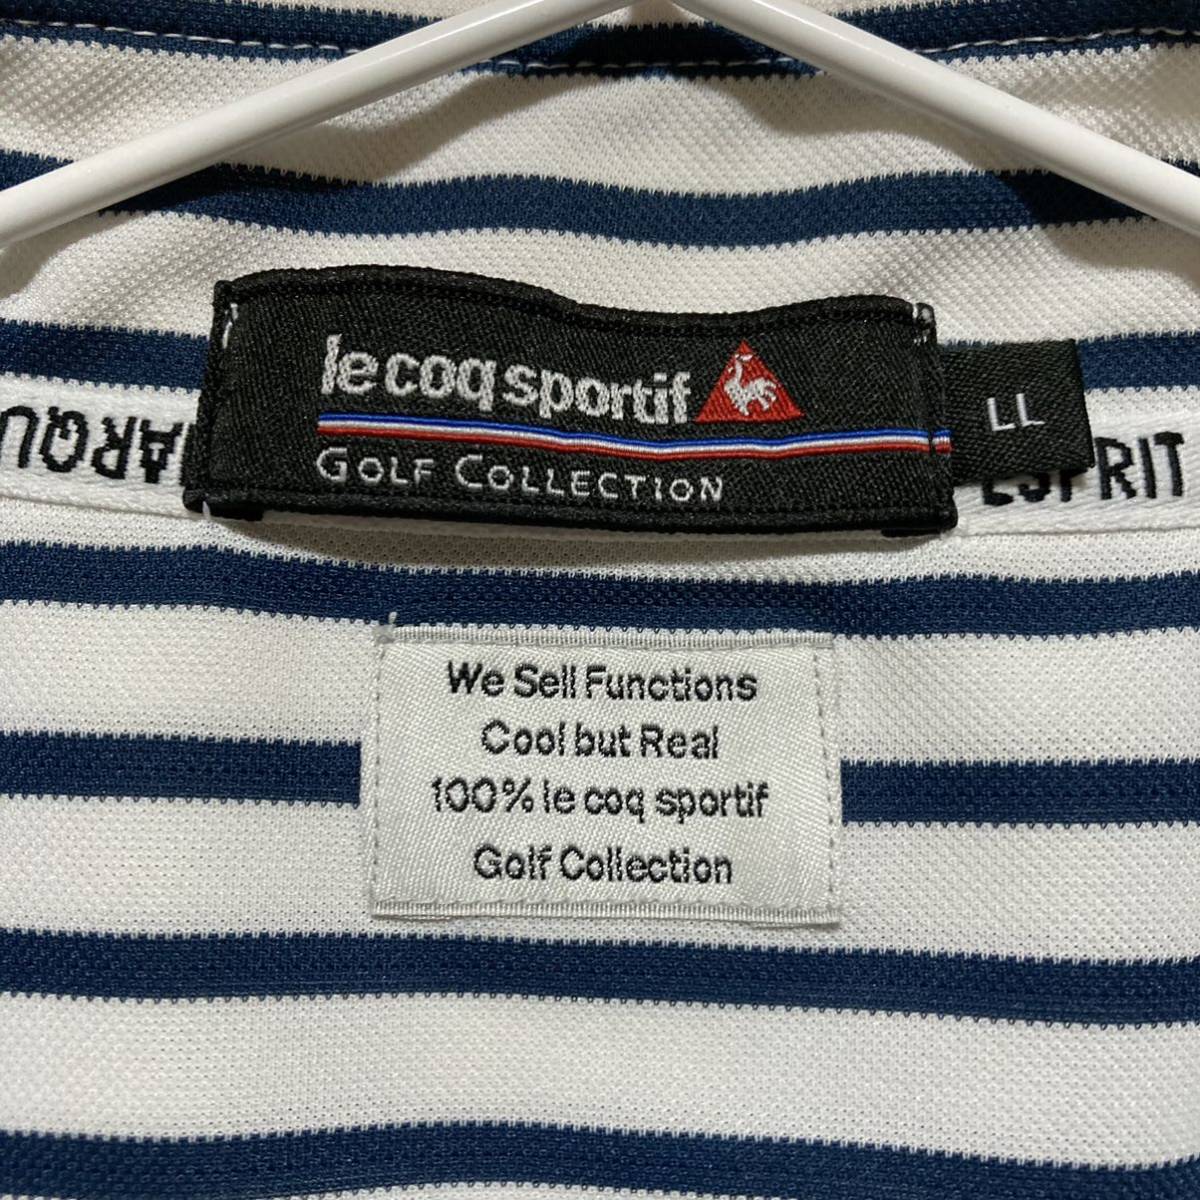 【le coq golf】 ルコックゴルフ メンズ 半袖ハーフジップシャツ LLサイズ ボーダー柄 送料無料!_画像6